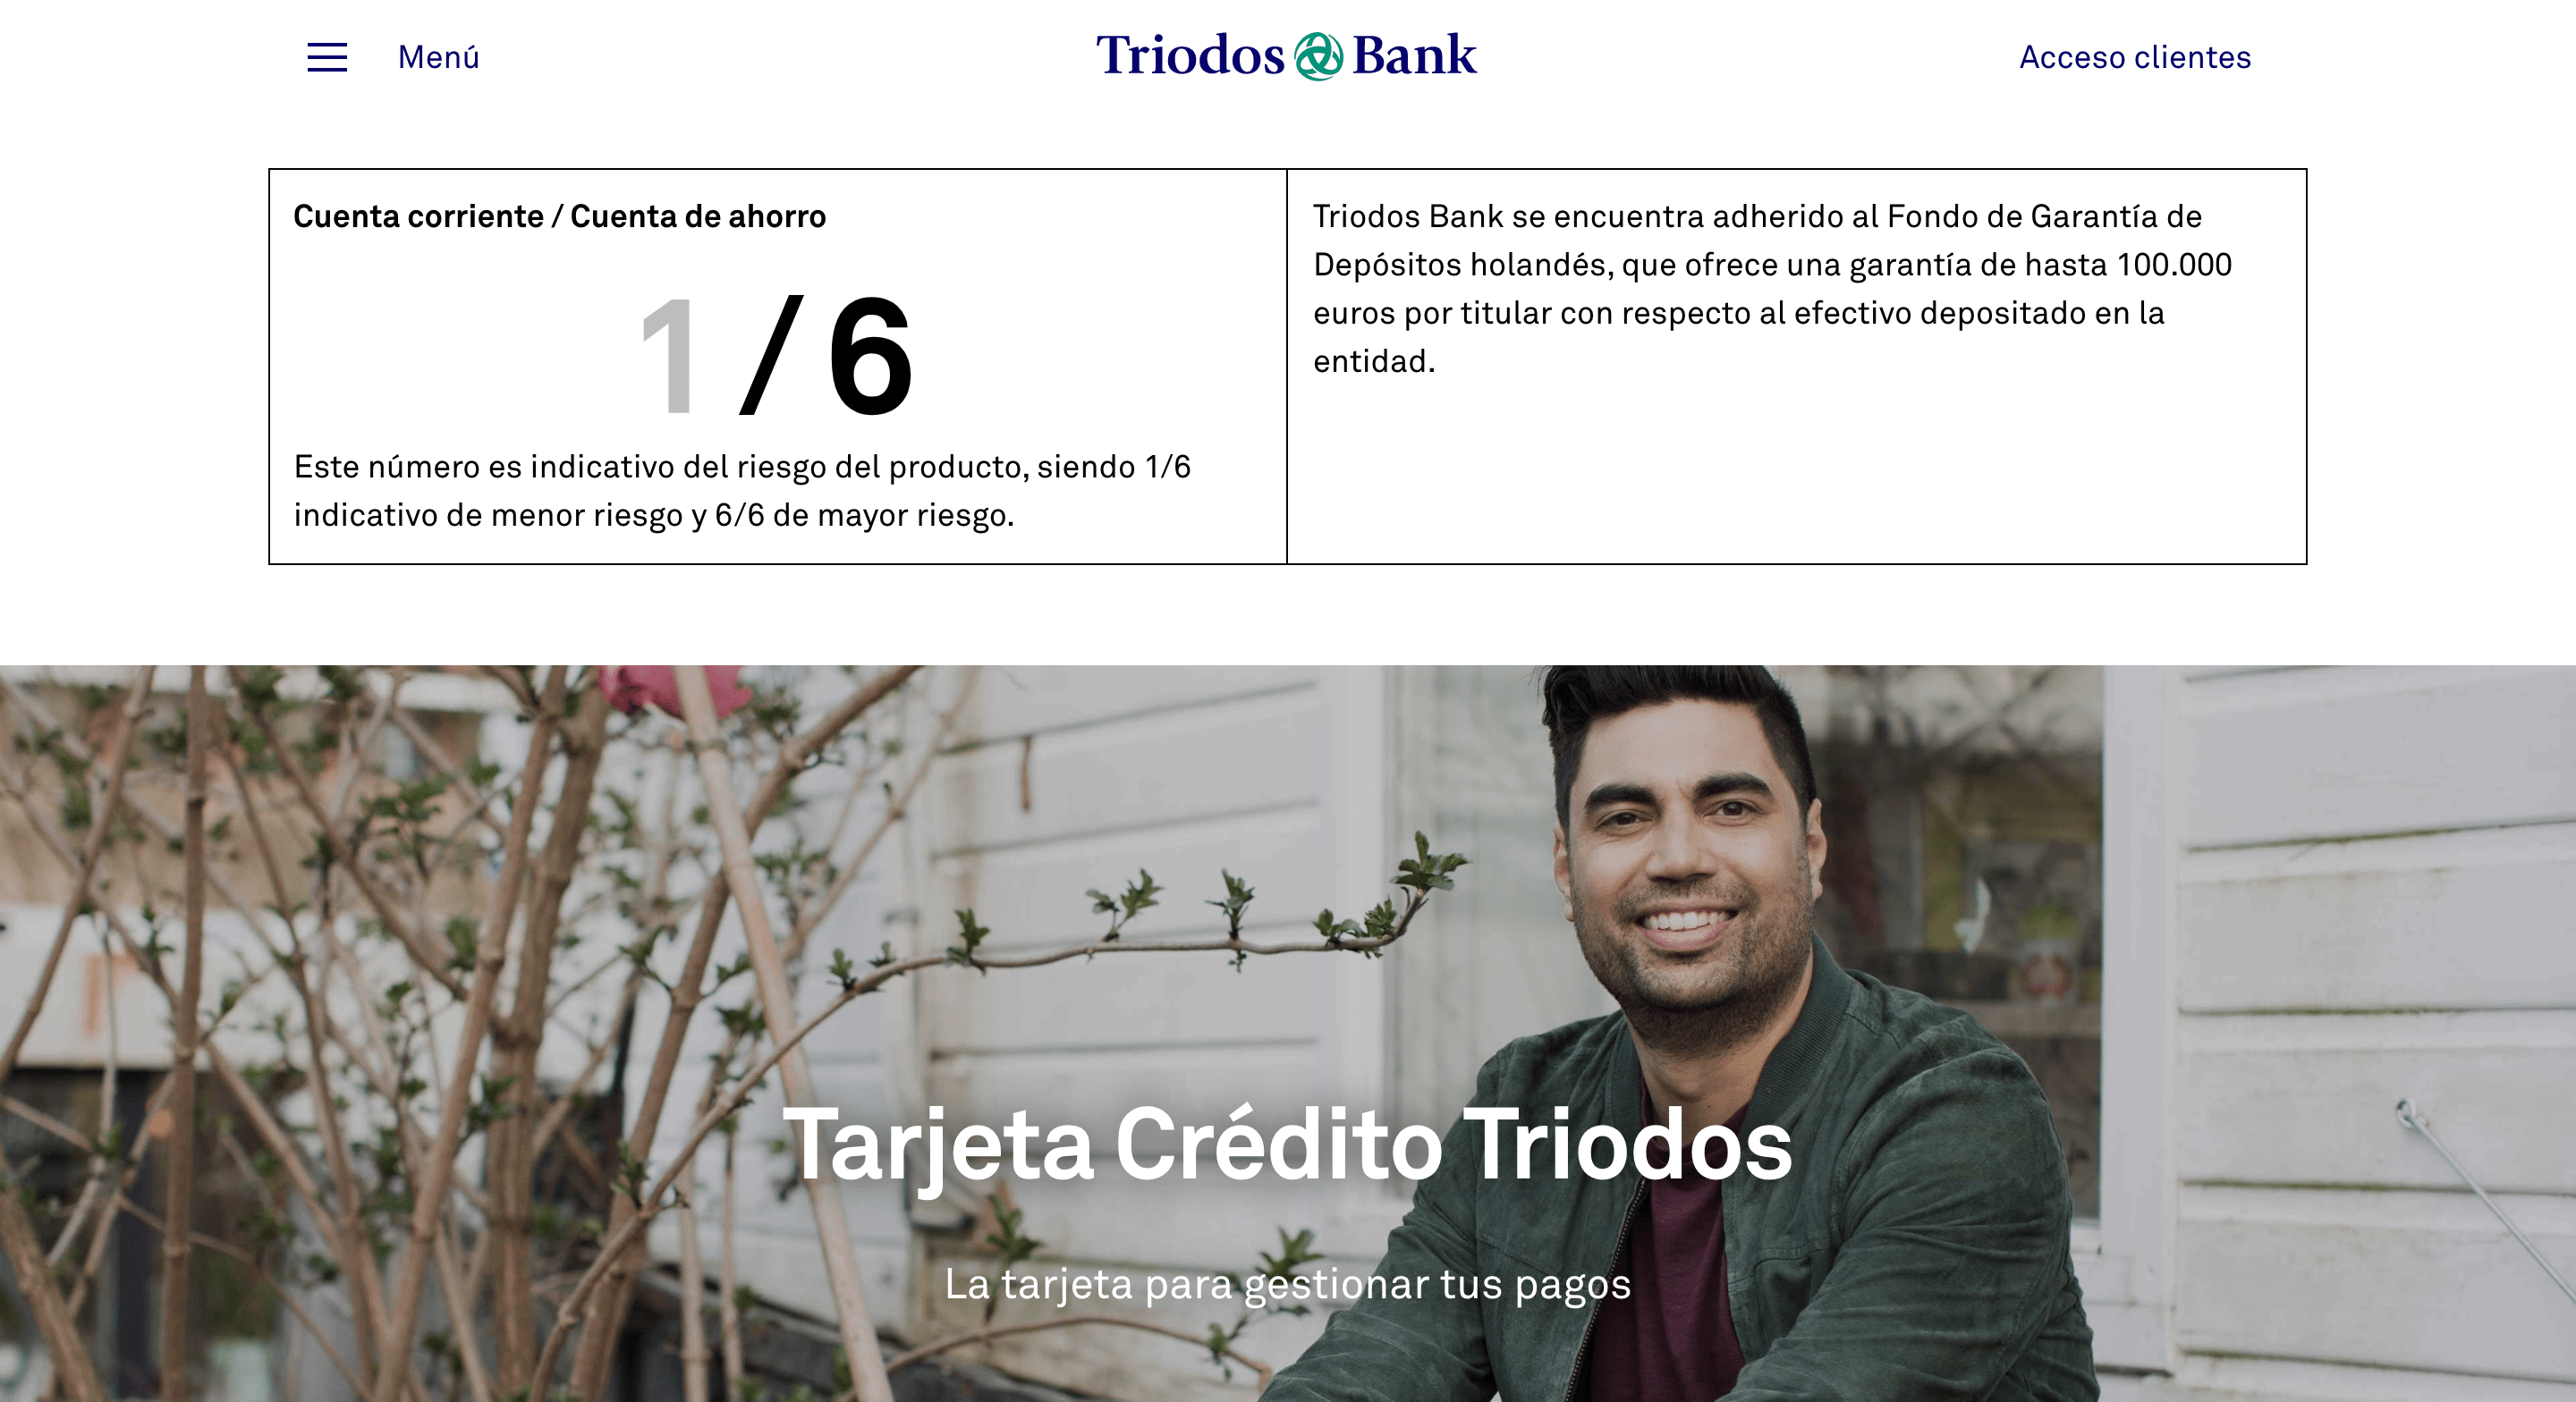 Triodos Bank Tarjeta Crédito experiencia y discusión